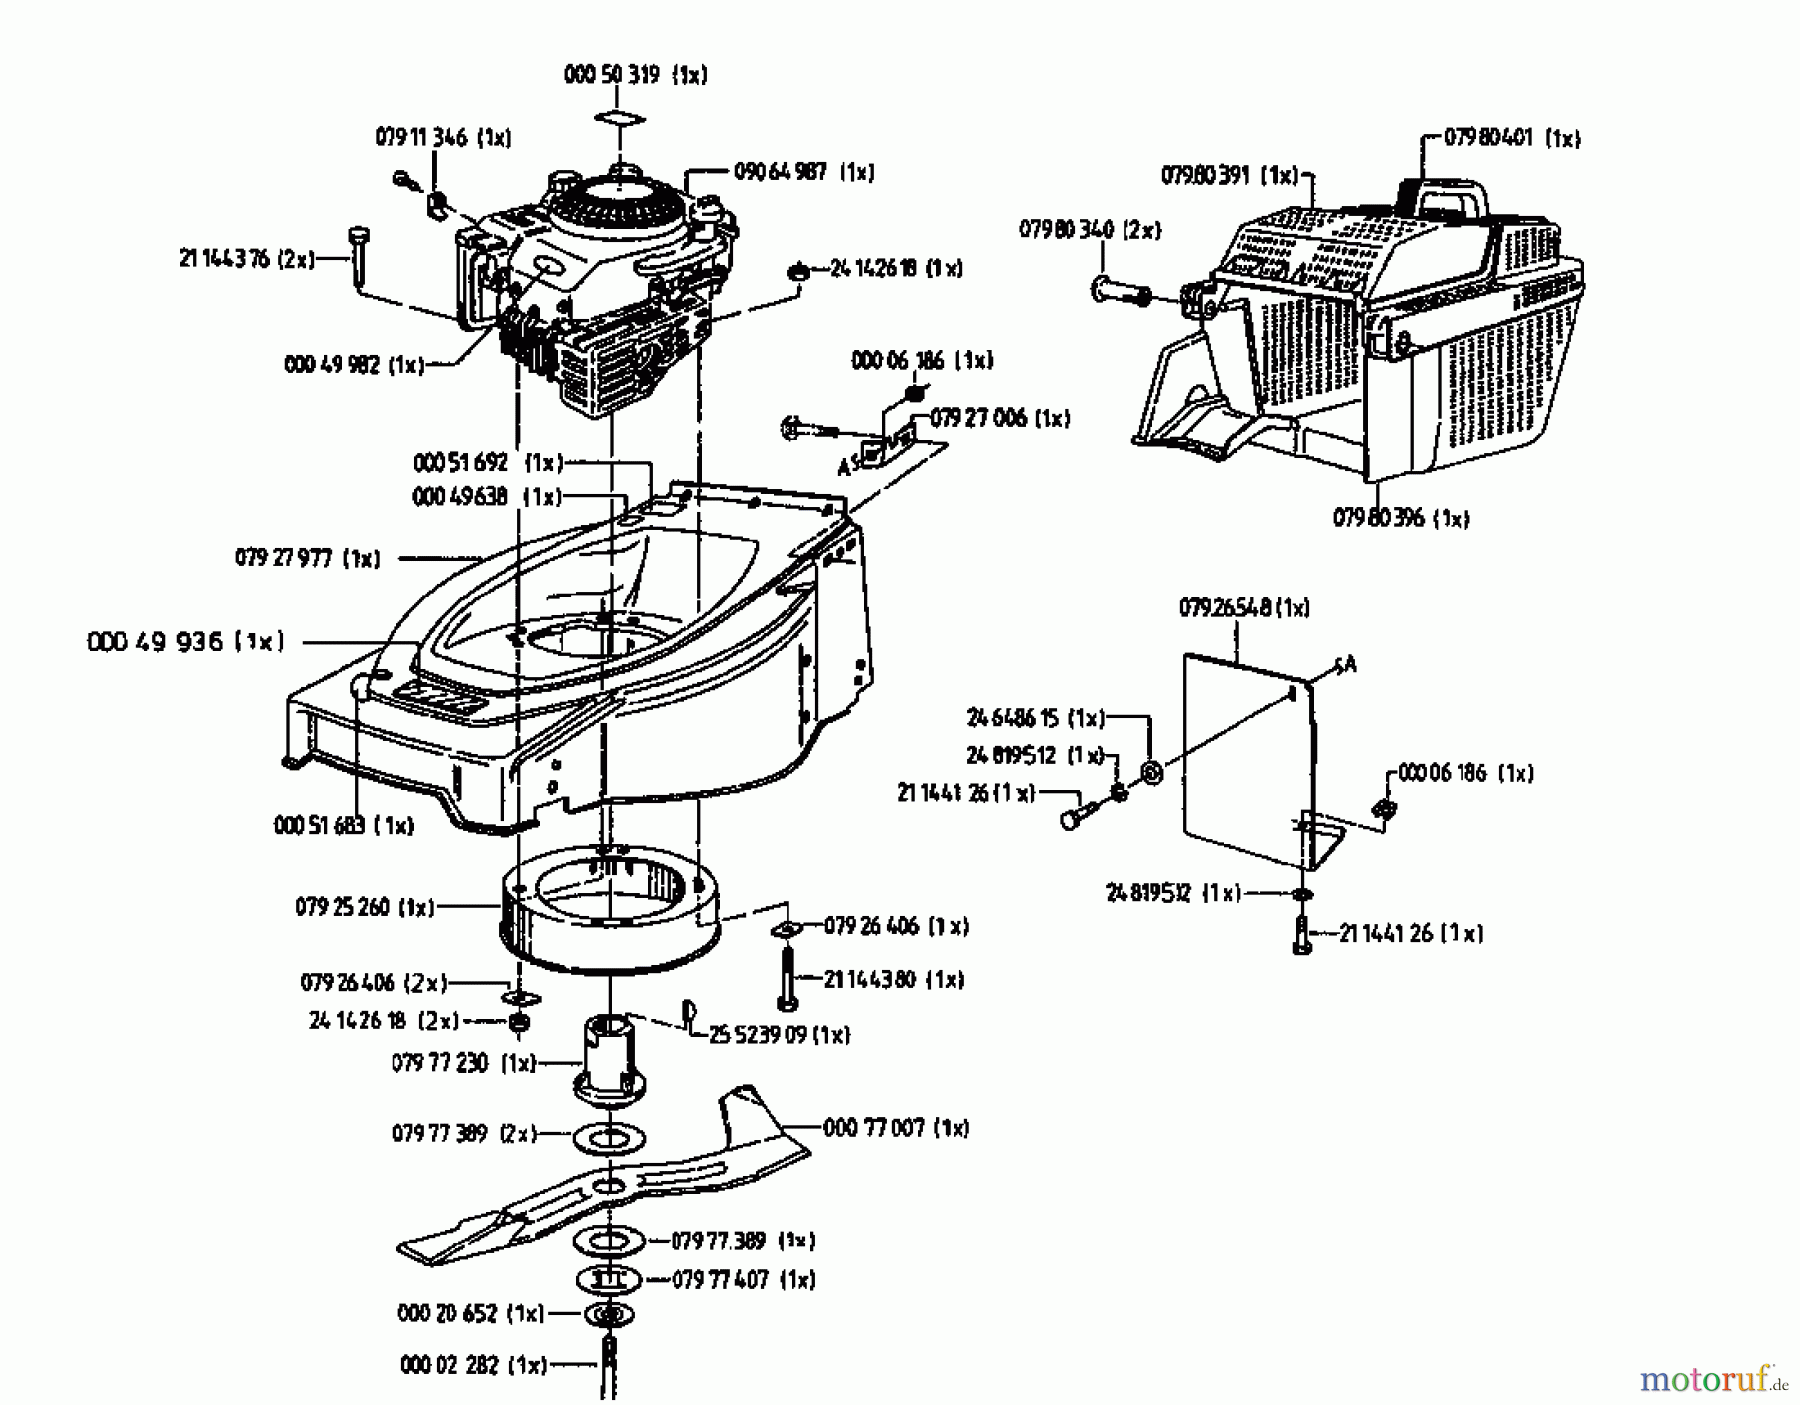  Gutbrod Tondeuse thermique HB 42 L 04028.02  (1996) Machine de base